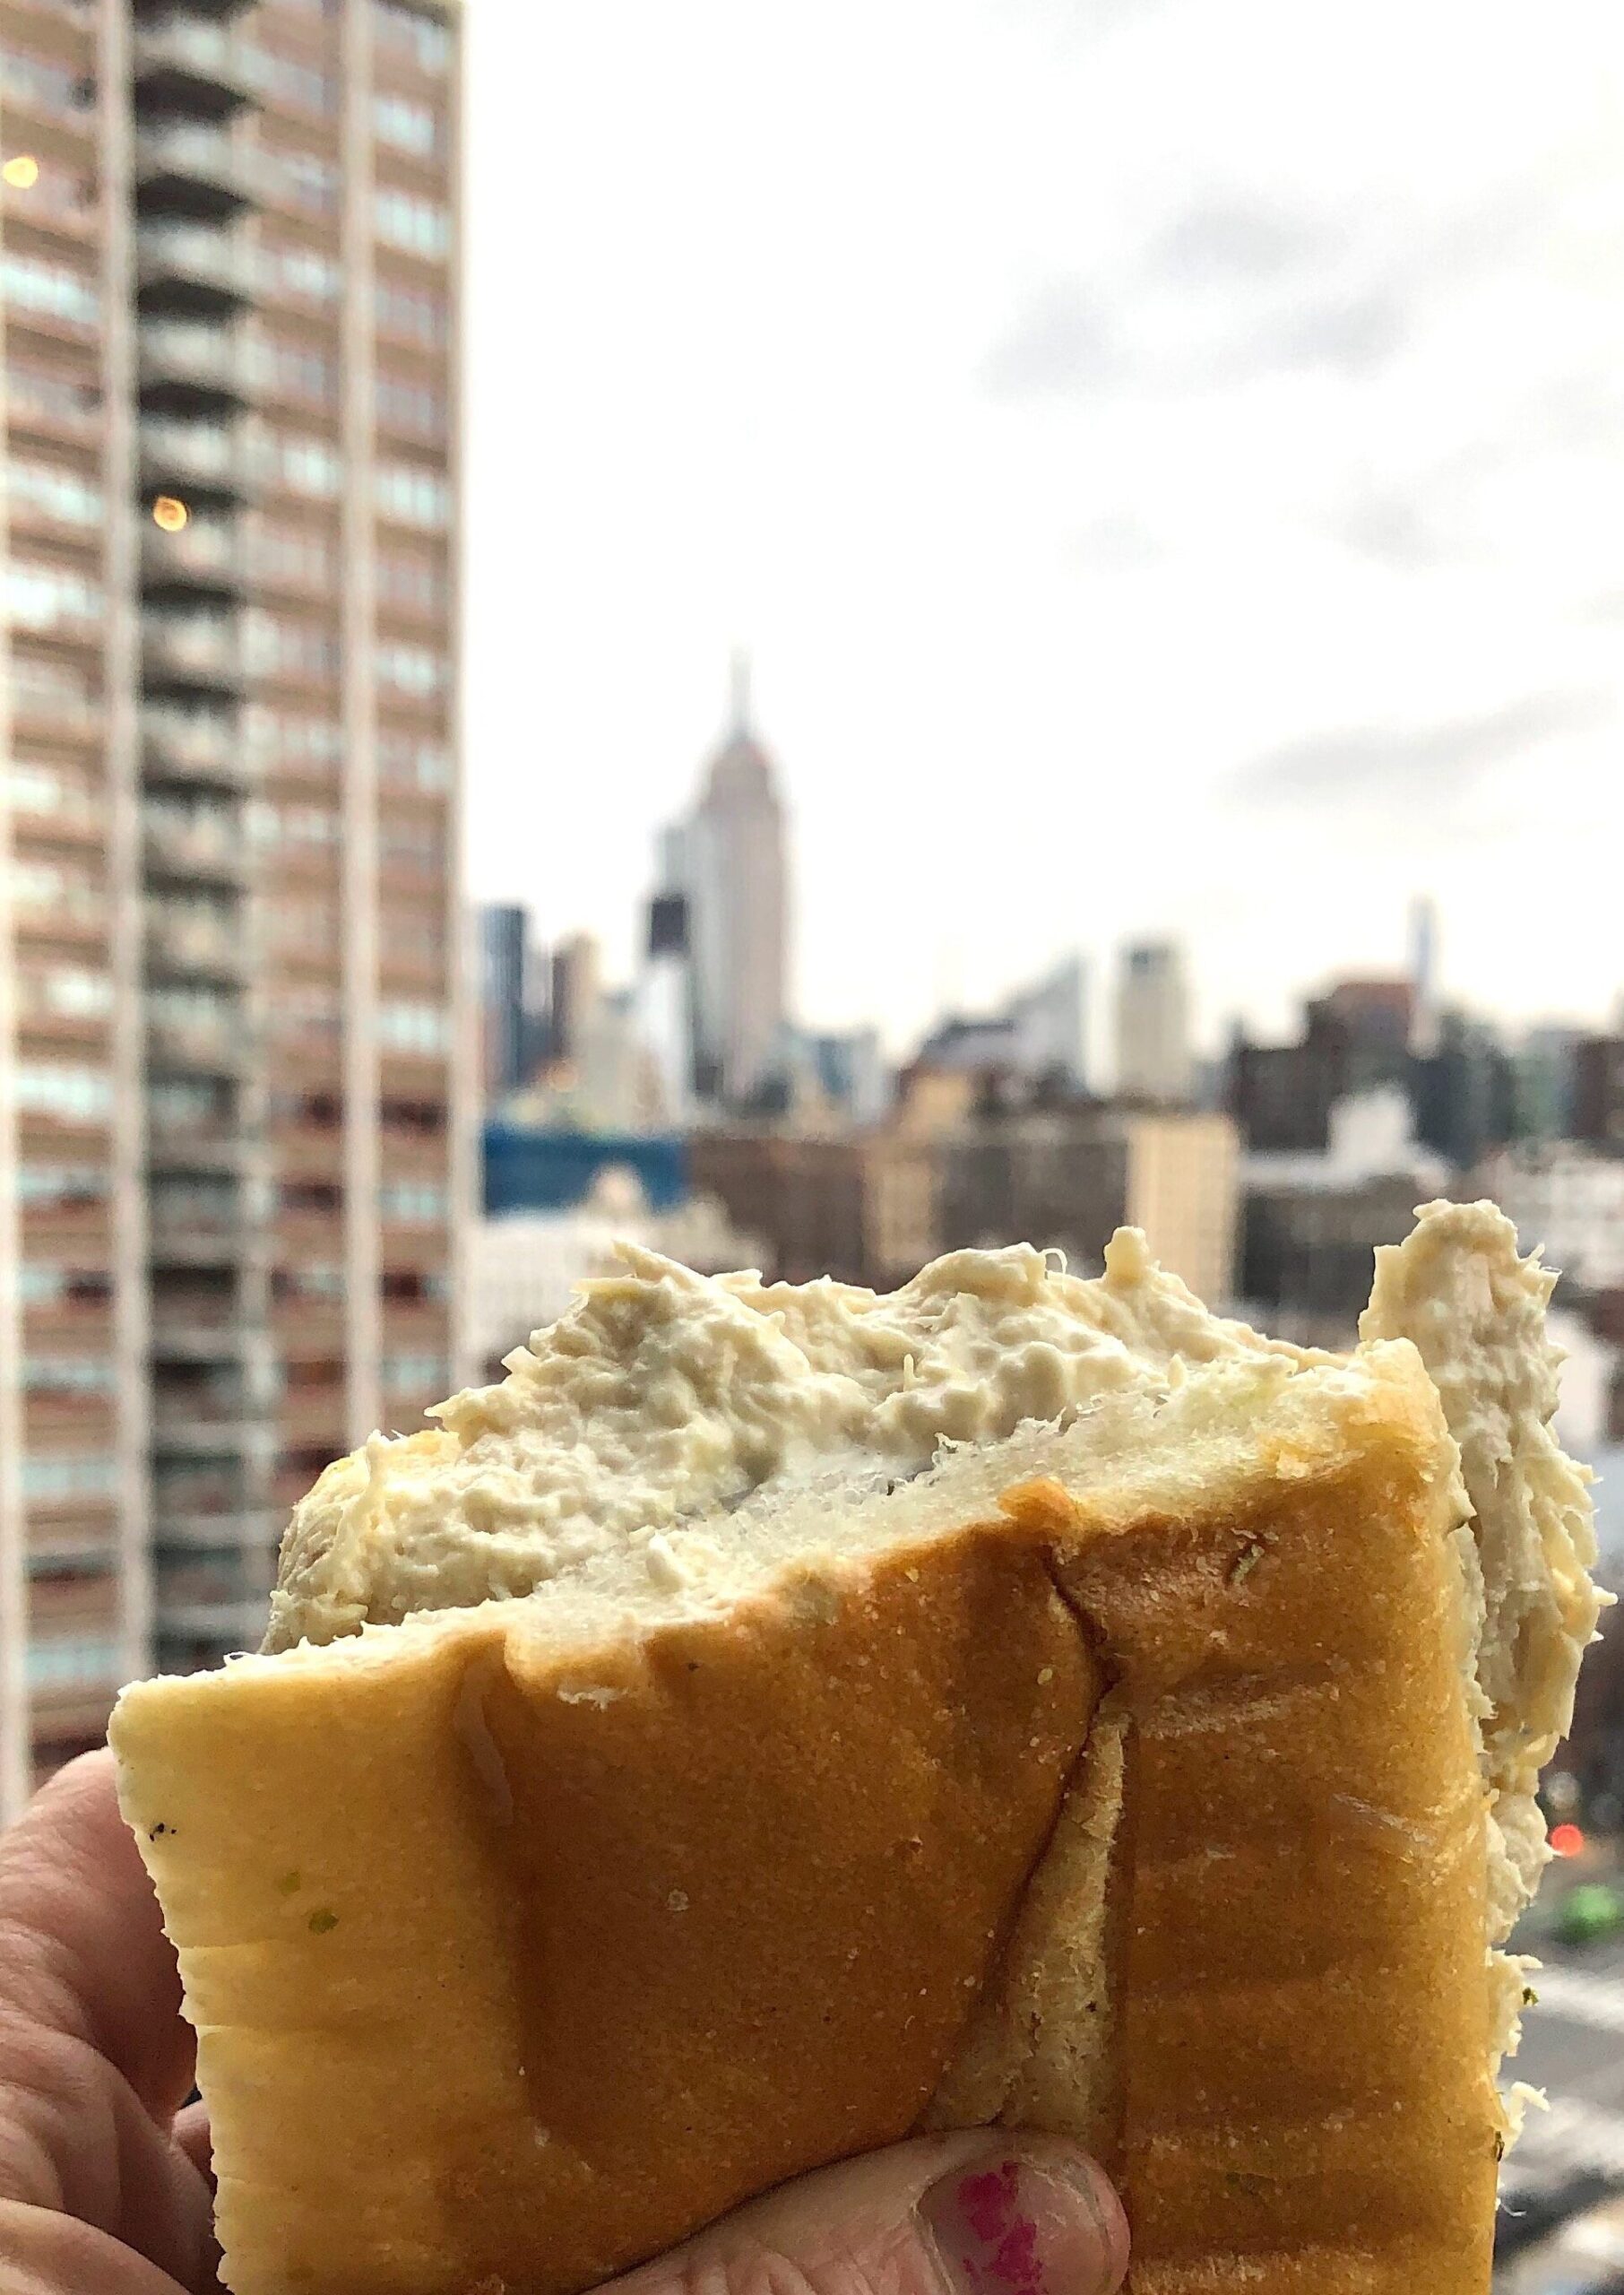 Coddiwomple sandwiches, coddiwomple, Coddiwomple east village, East village sandwiches, best NYC sandwiches, sandwich shops NYC, best of New York City 